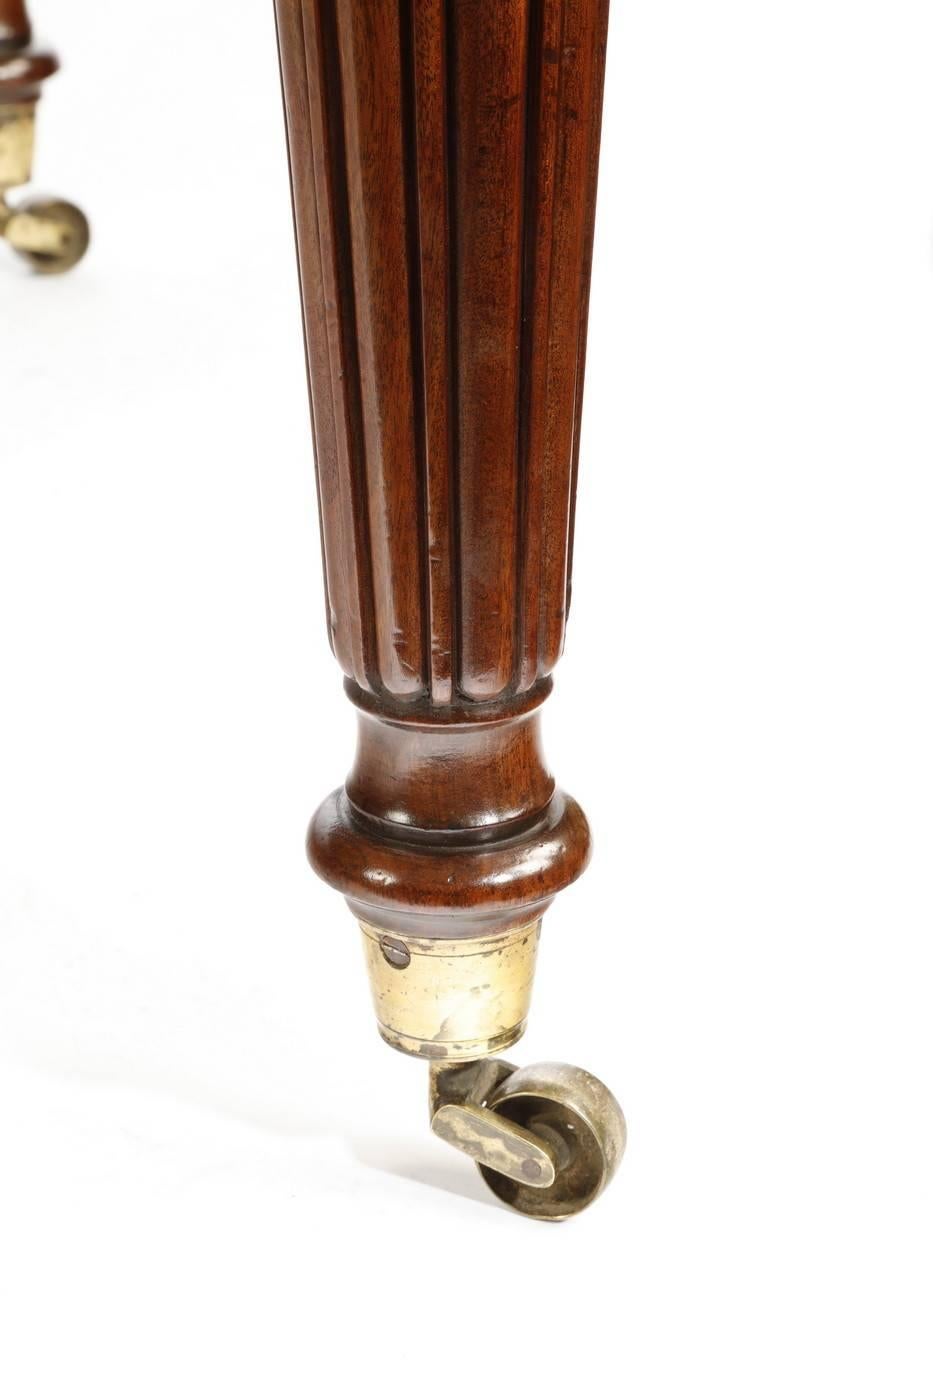 Table à écrire Regency en acajou bien figuré, de forme rectangulaire avec un plateau en cuir vert, un long tiroir et deux courts tiroirs dans chaque frise, reposant sur des pieds fuselés et cannelés avec les roulettes d'origine, vers 1810.